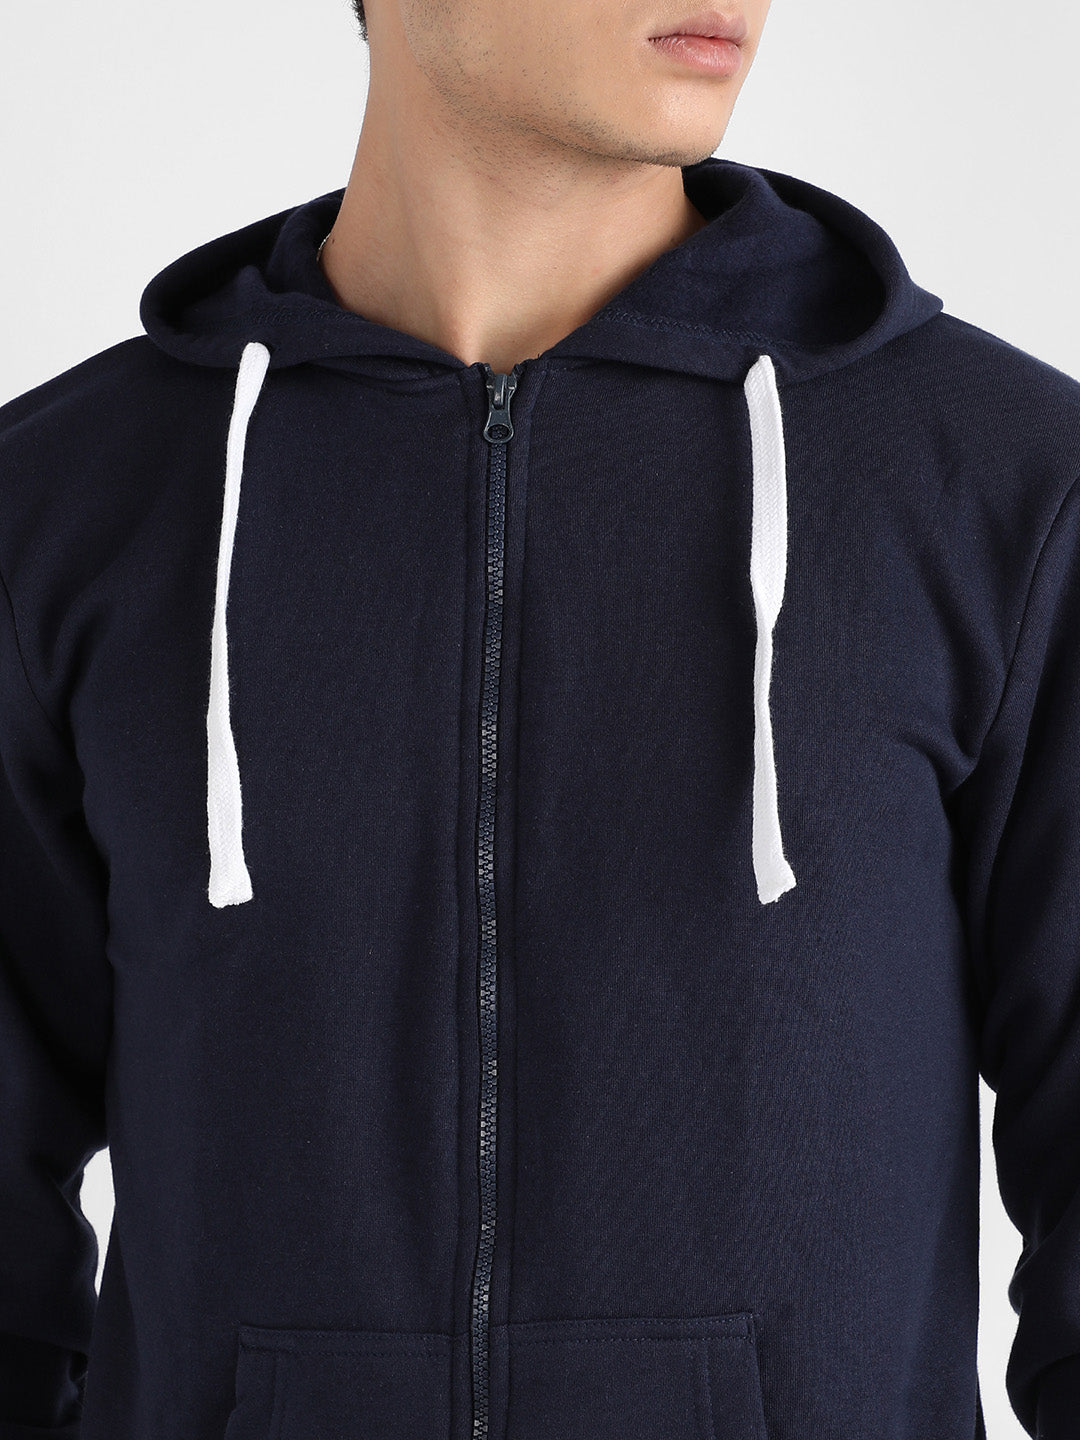 Men's Dark Blue Zip-Front Hoodie With Contrast Drawstring